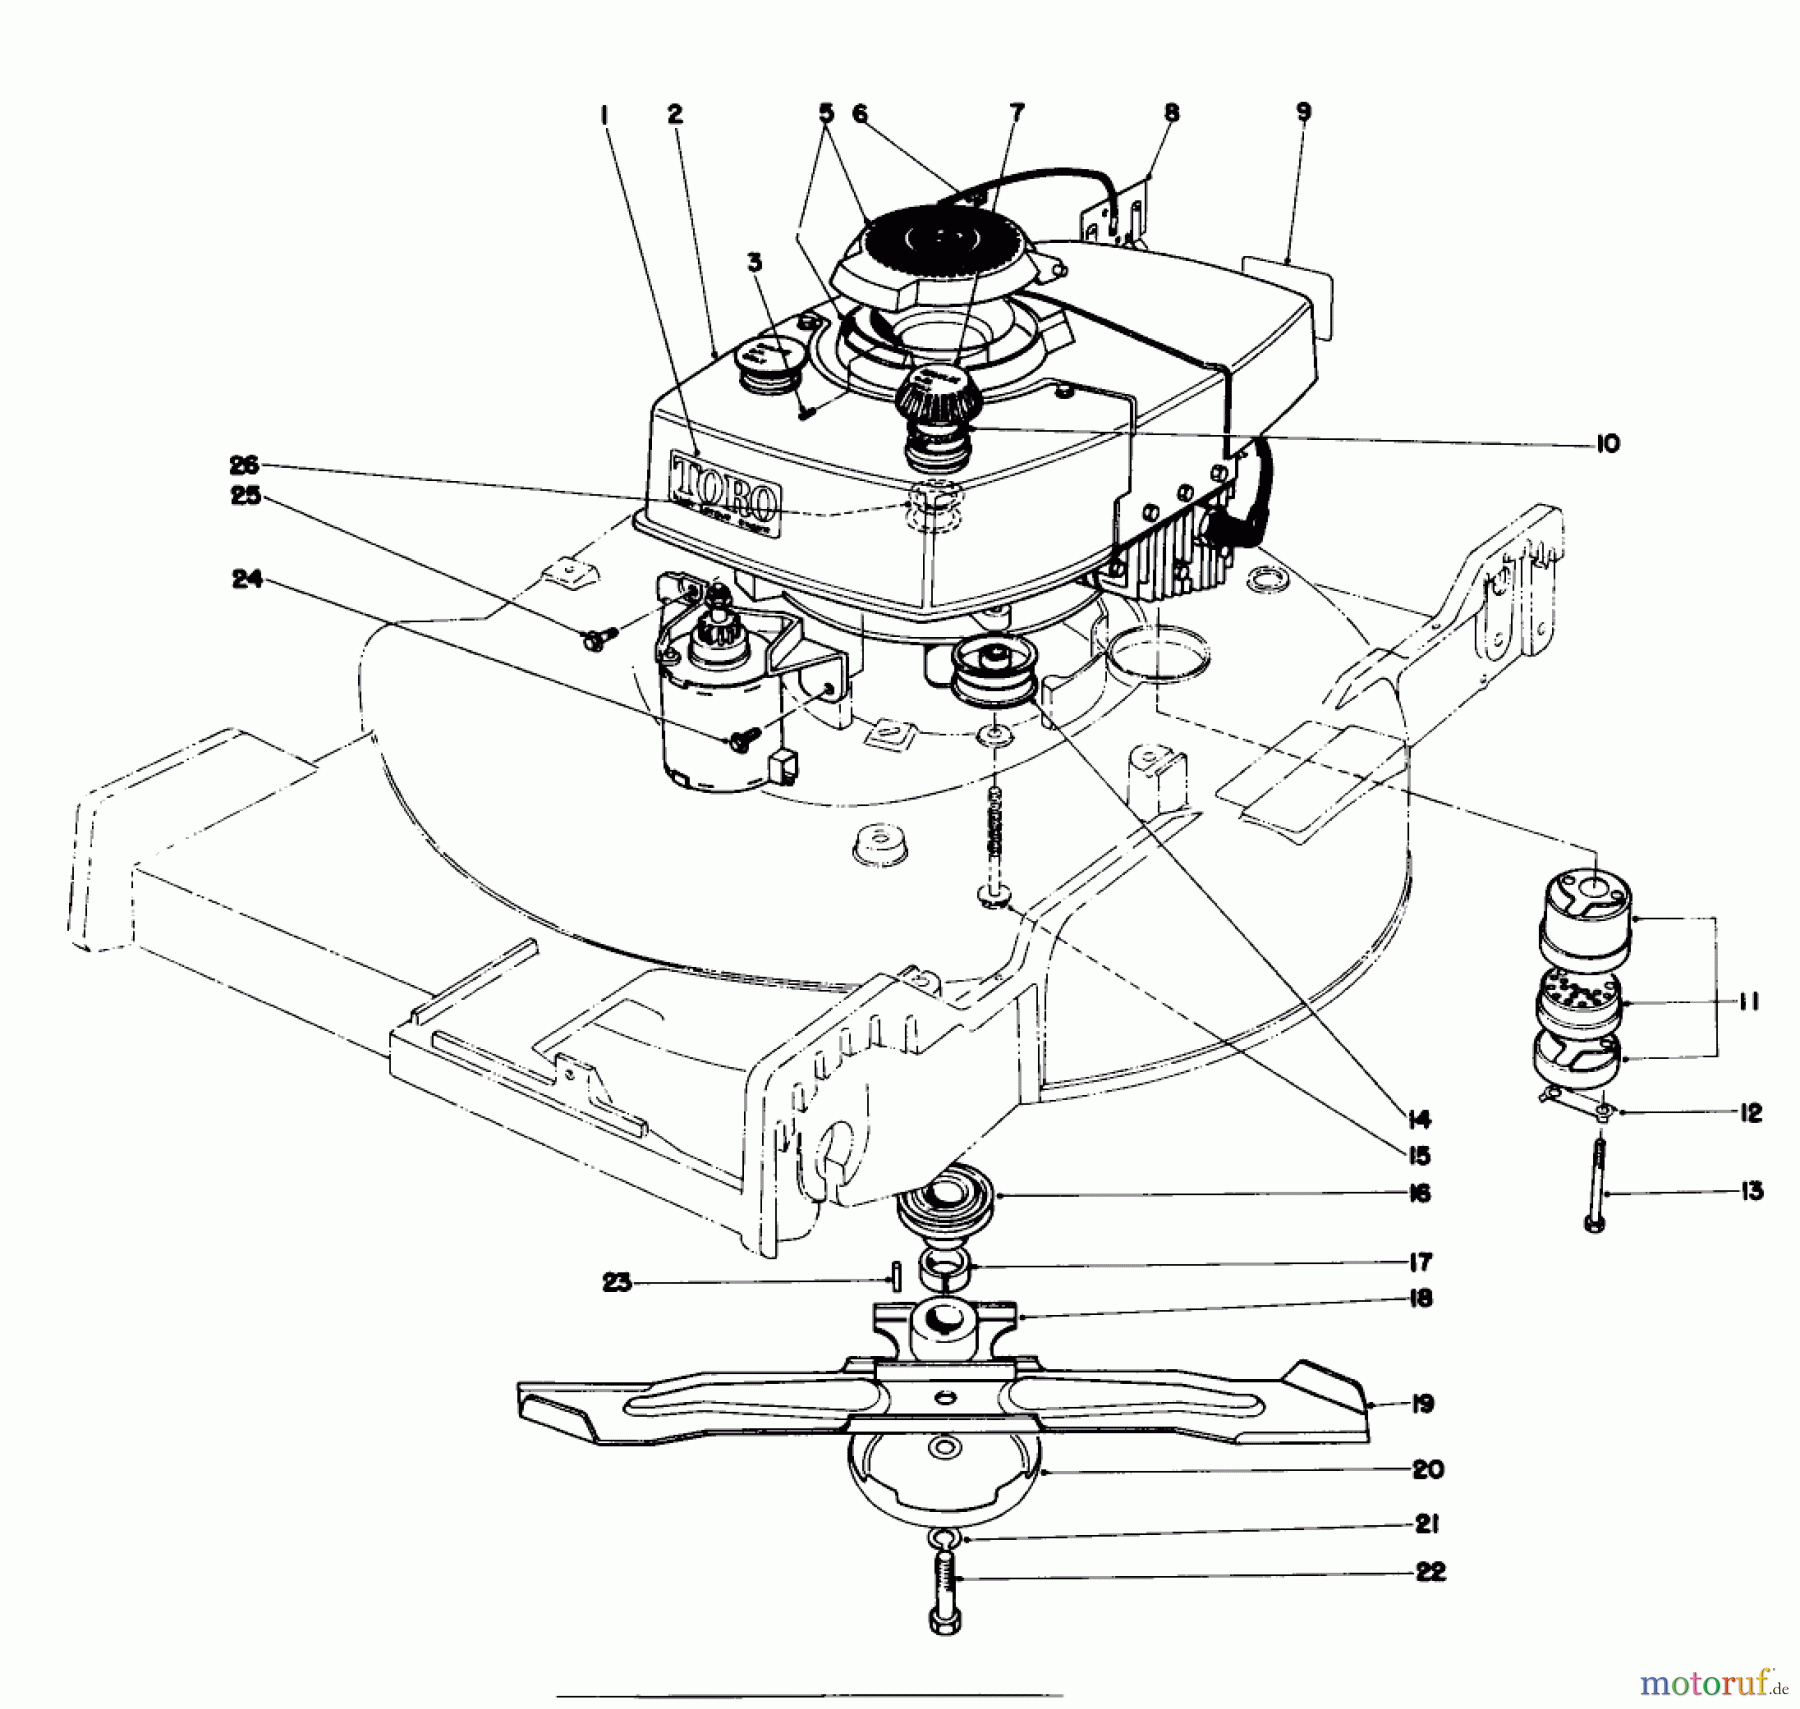  Toro Neu Mowers, Walk-Behind Seite 1 20660 - Toro Lawnmower, 1975 (5000001-5999999) ENGINE ASSEMBLY